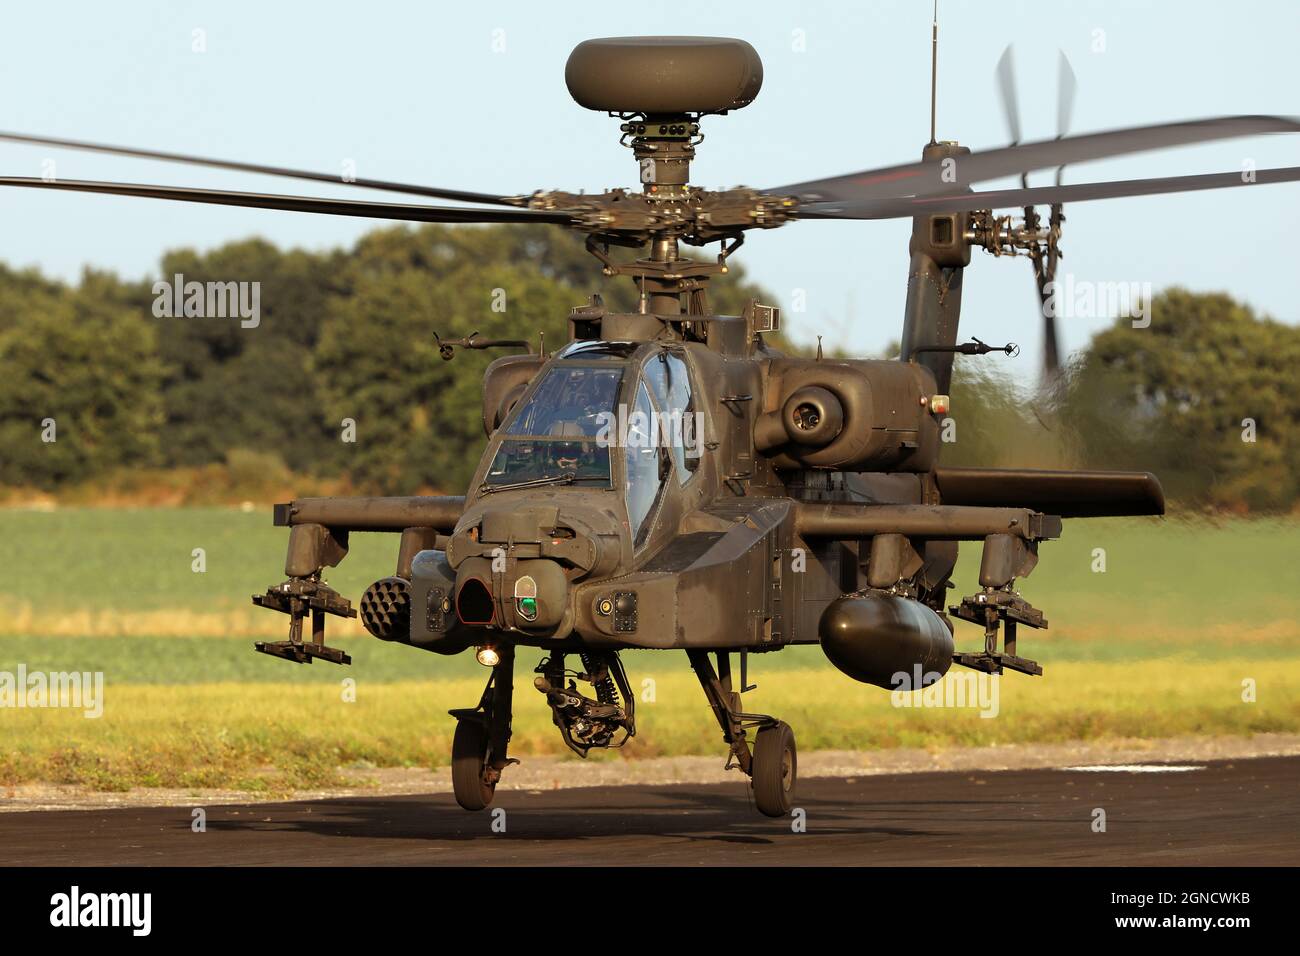 Boeing AH-64D Apache Longbow-Angriffshubschrauber des British Army Air Corps - Hulver Airfield, Hulver, UK, Nachrichten - 22. September 2021 Stockfoto